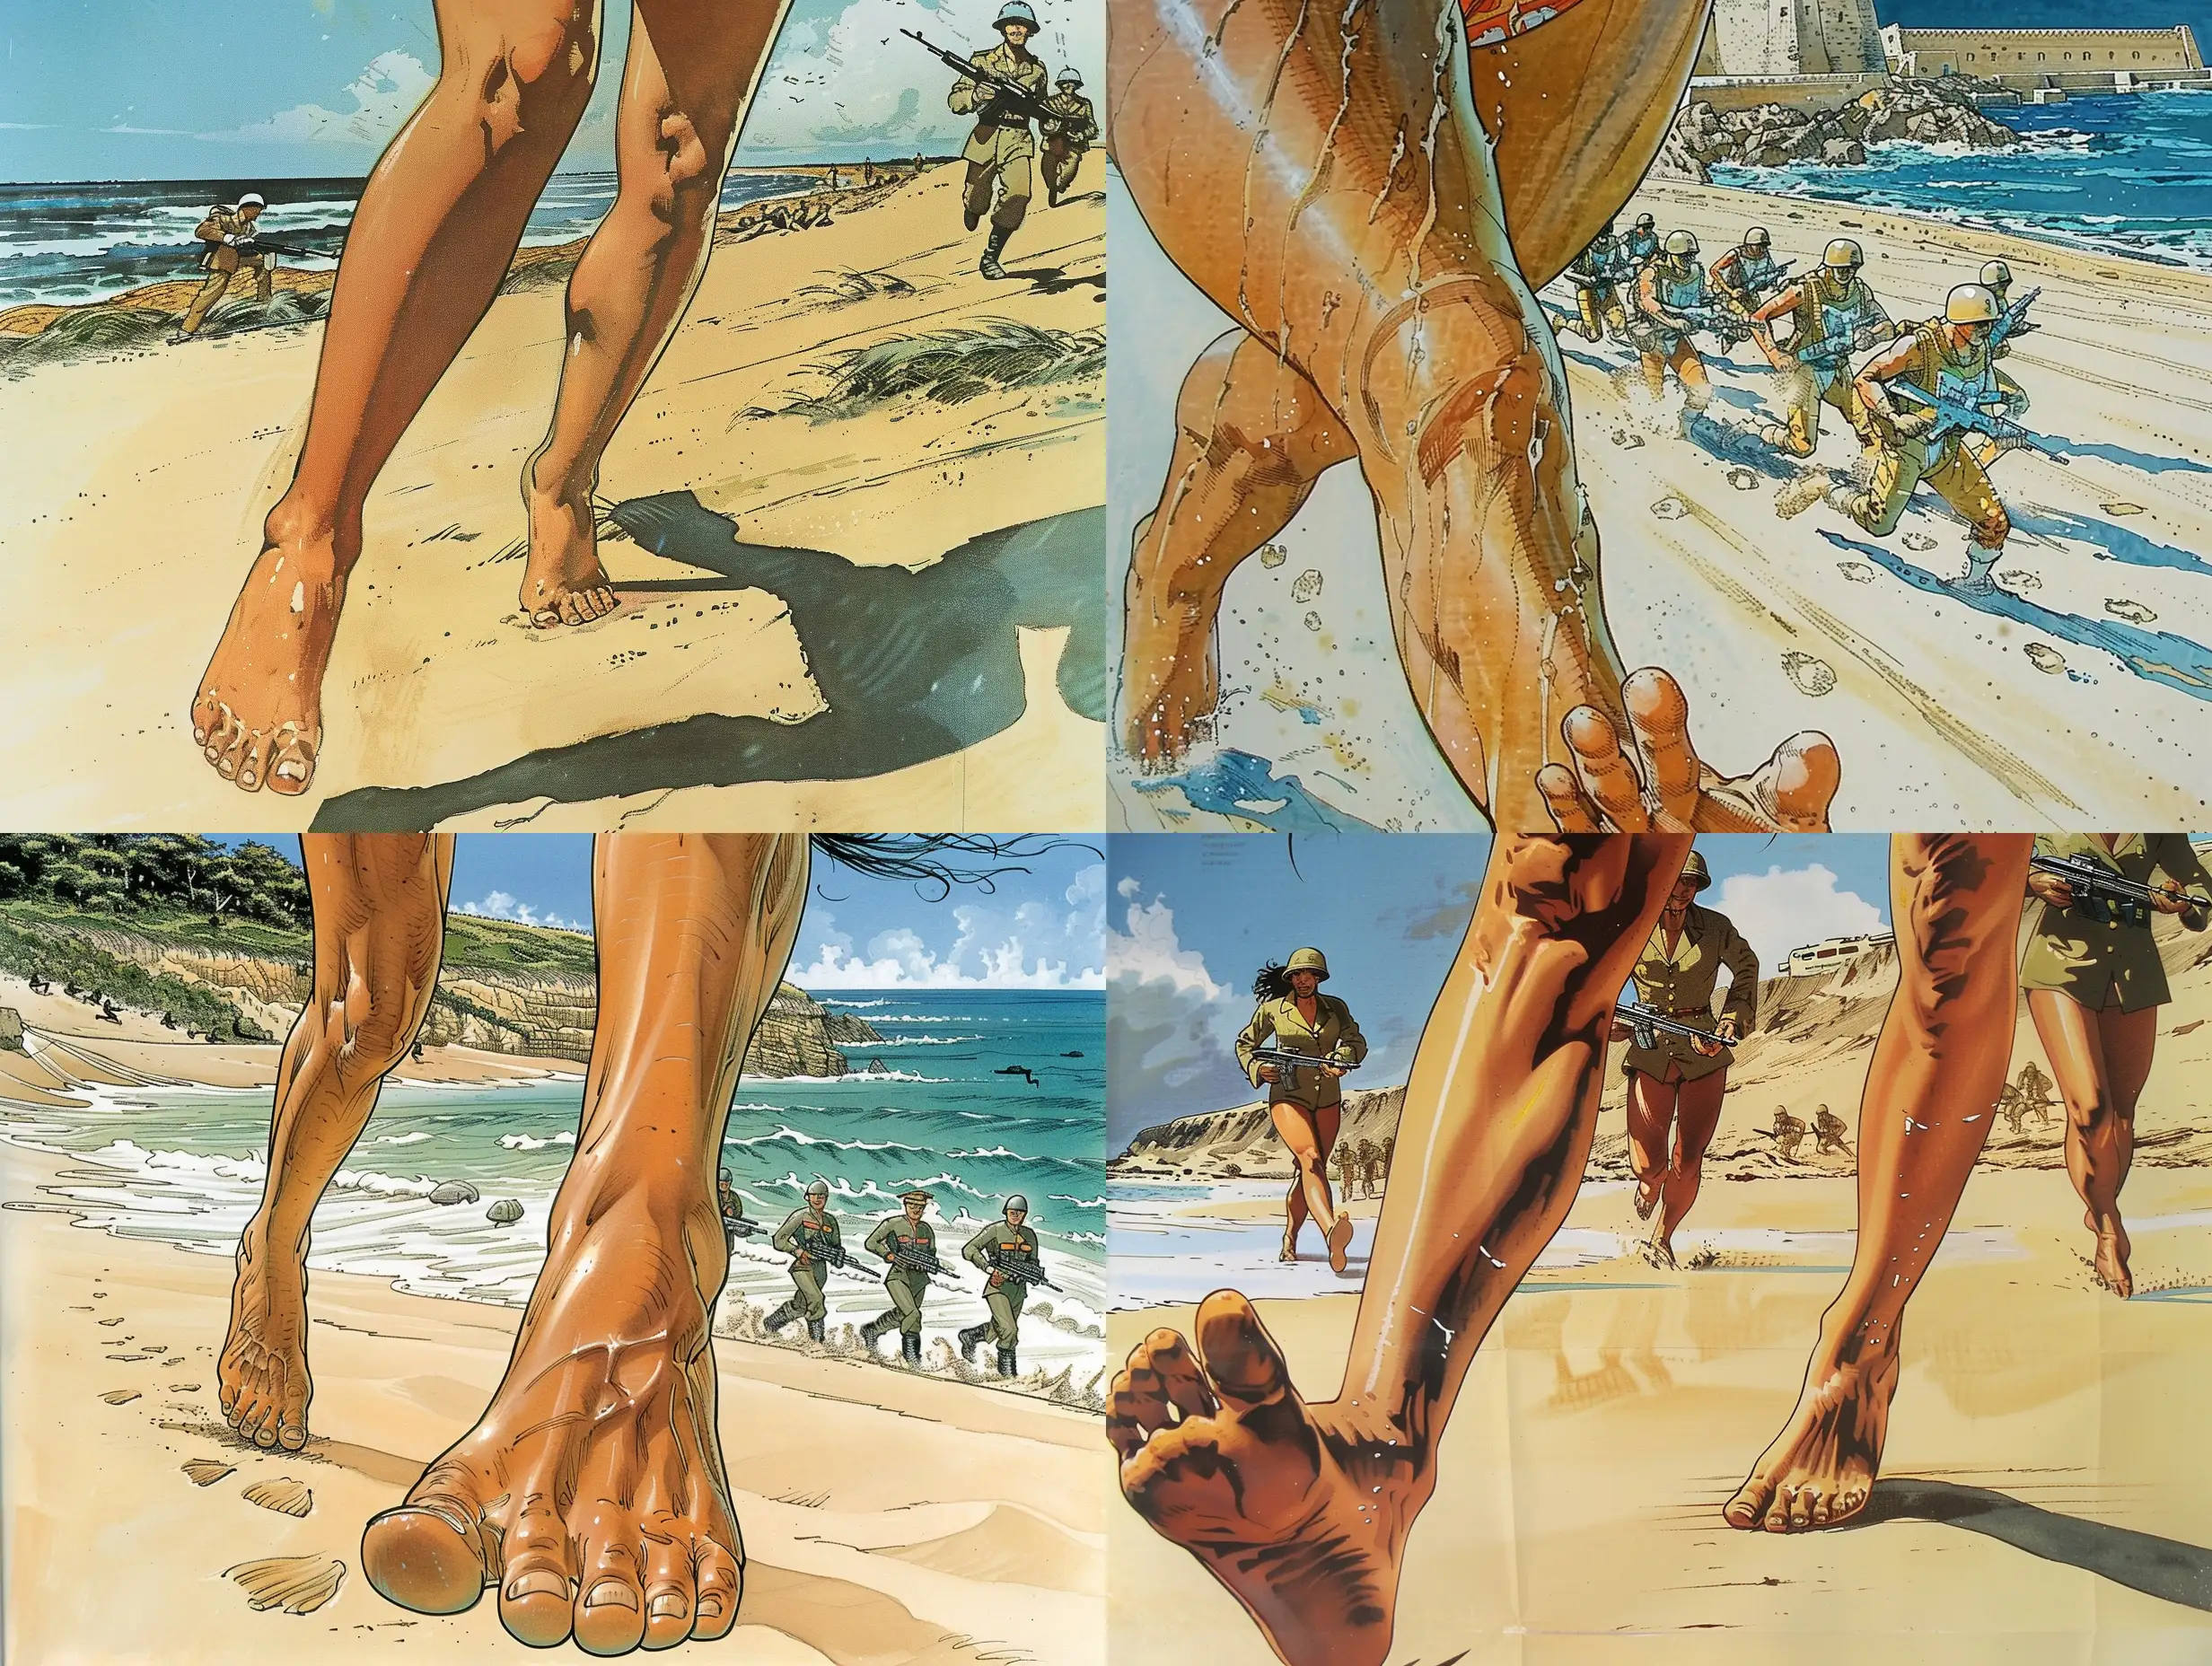 Dessin BD francophone, selon Artist Moebius, Histoire de Science-Fiction: Sur une plage, gros plan sur les pieds nus d'une belle femme en bikini. C'est au bord de la mer, dunes de sable, des hommes soldats en uniforme Sci-Fi miniatures courent sur le sable.